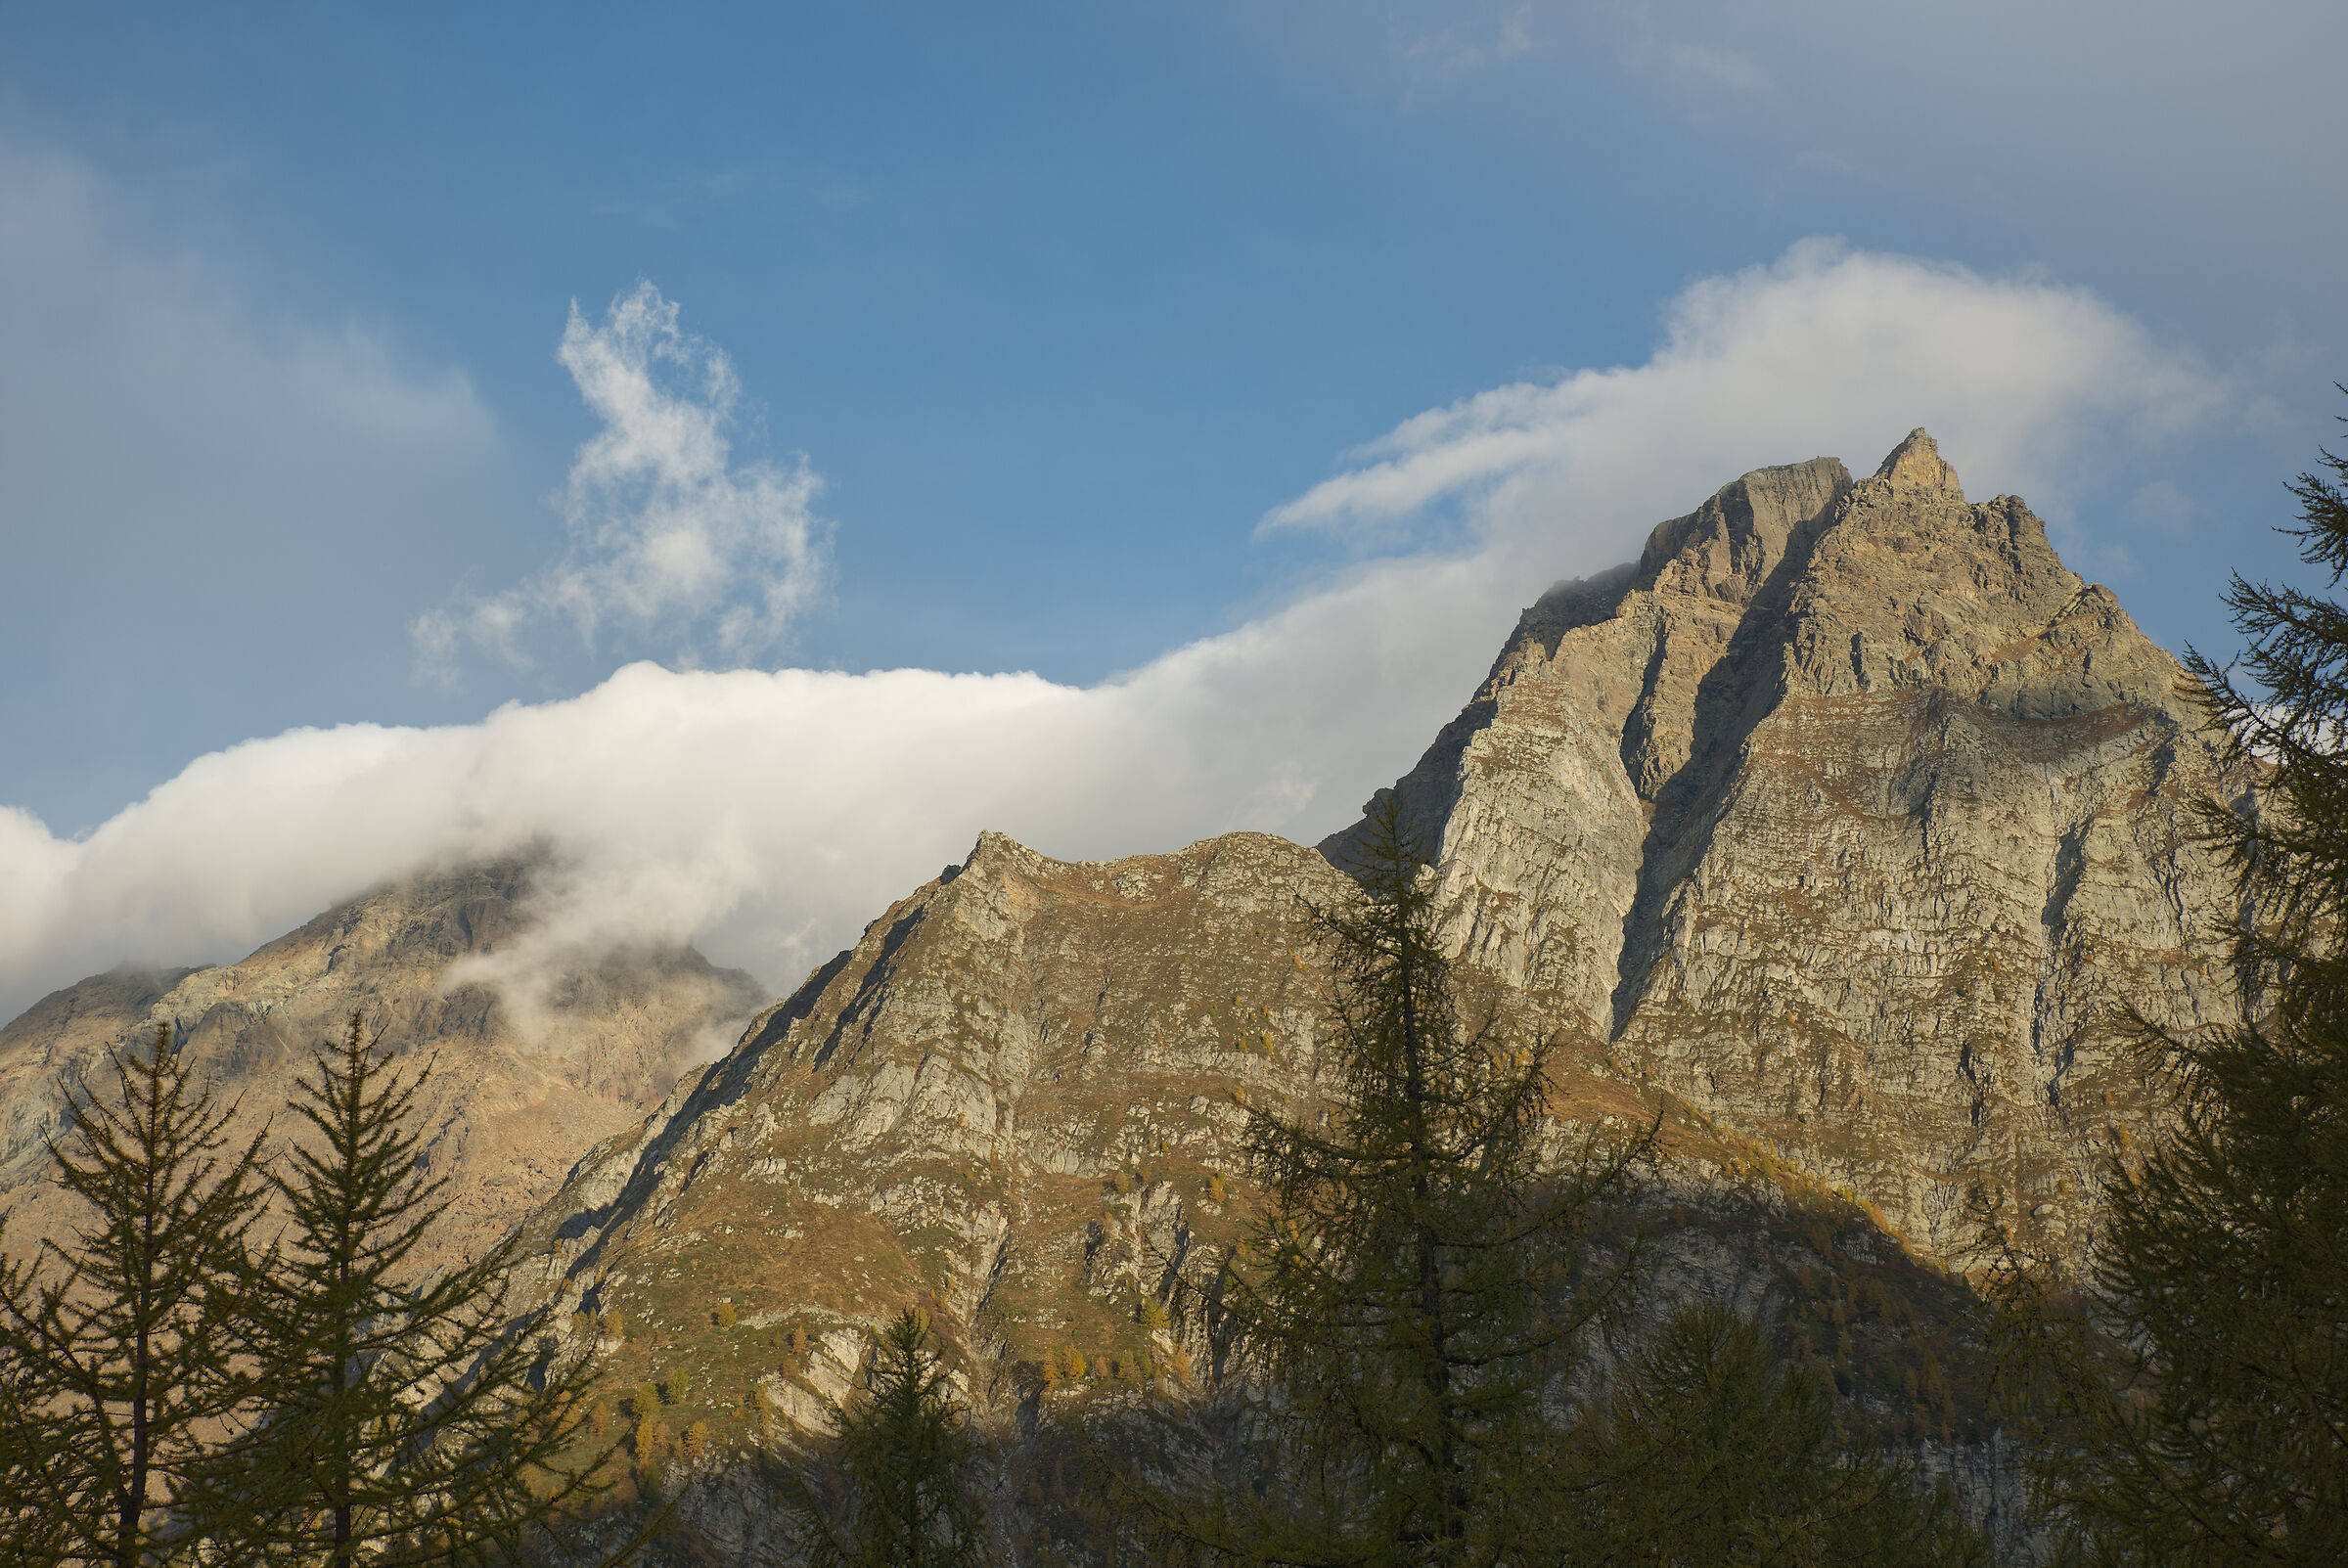 Alpe Devero-Alpe Sangiatto-laghetto superiore di Sangia...